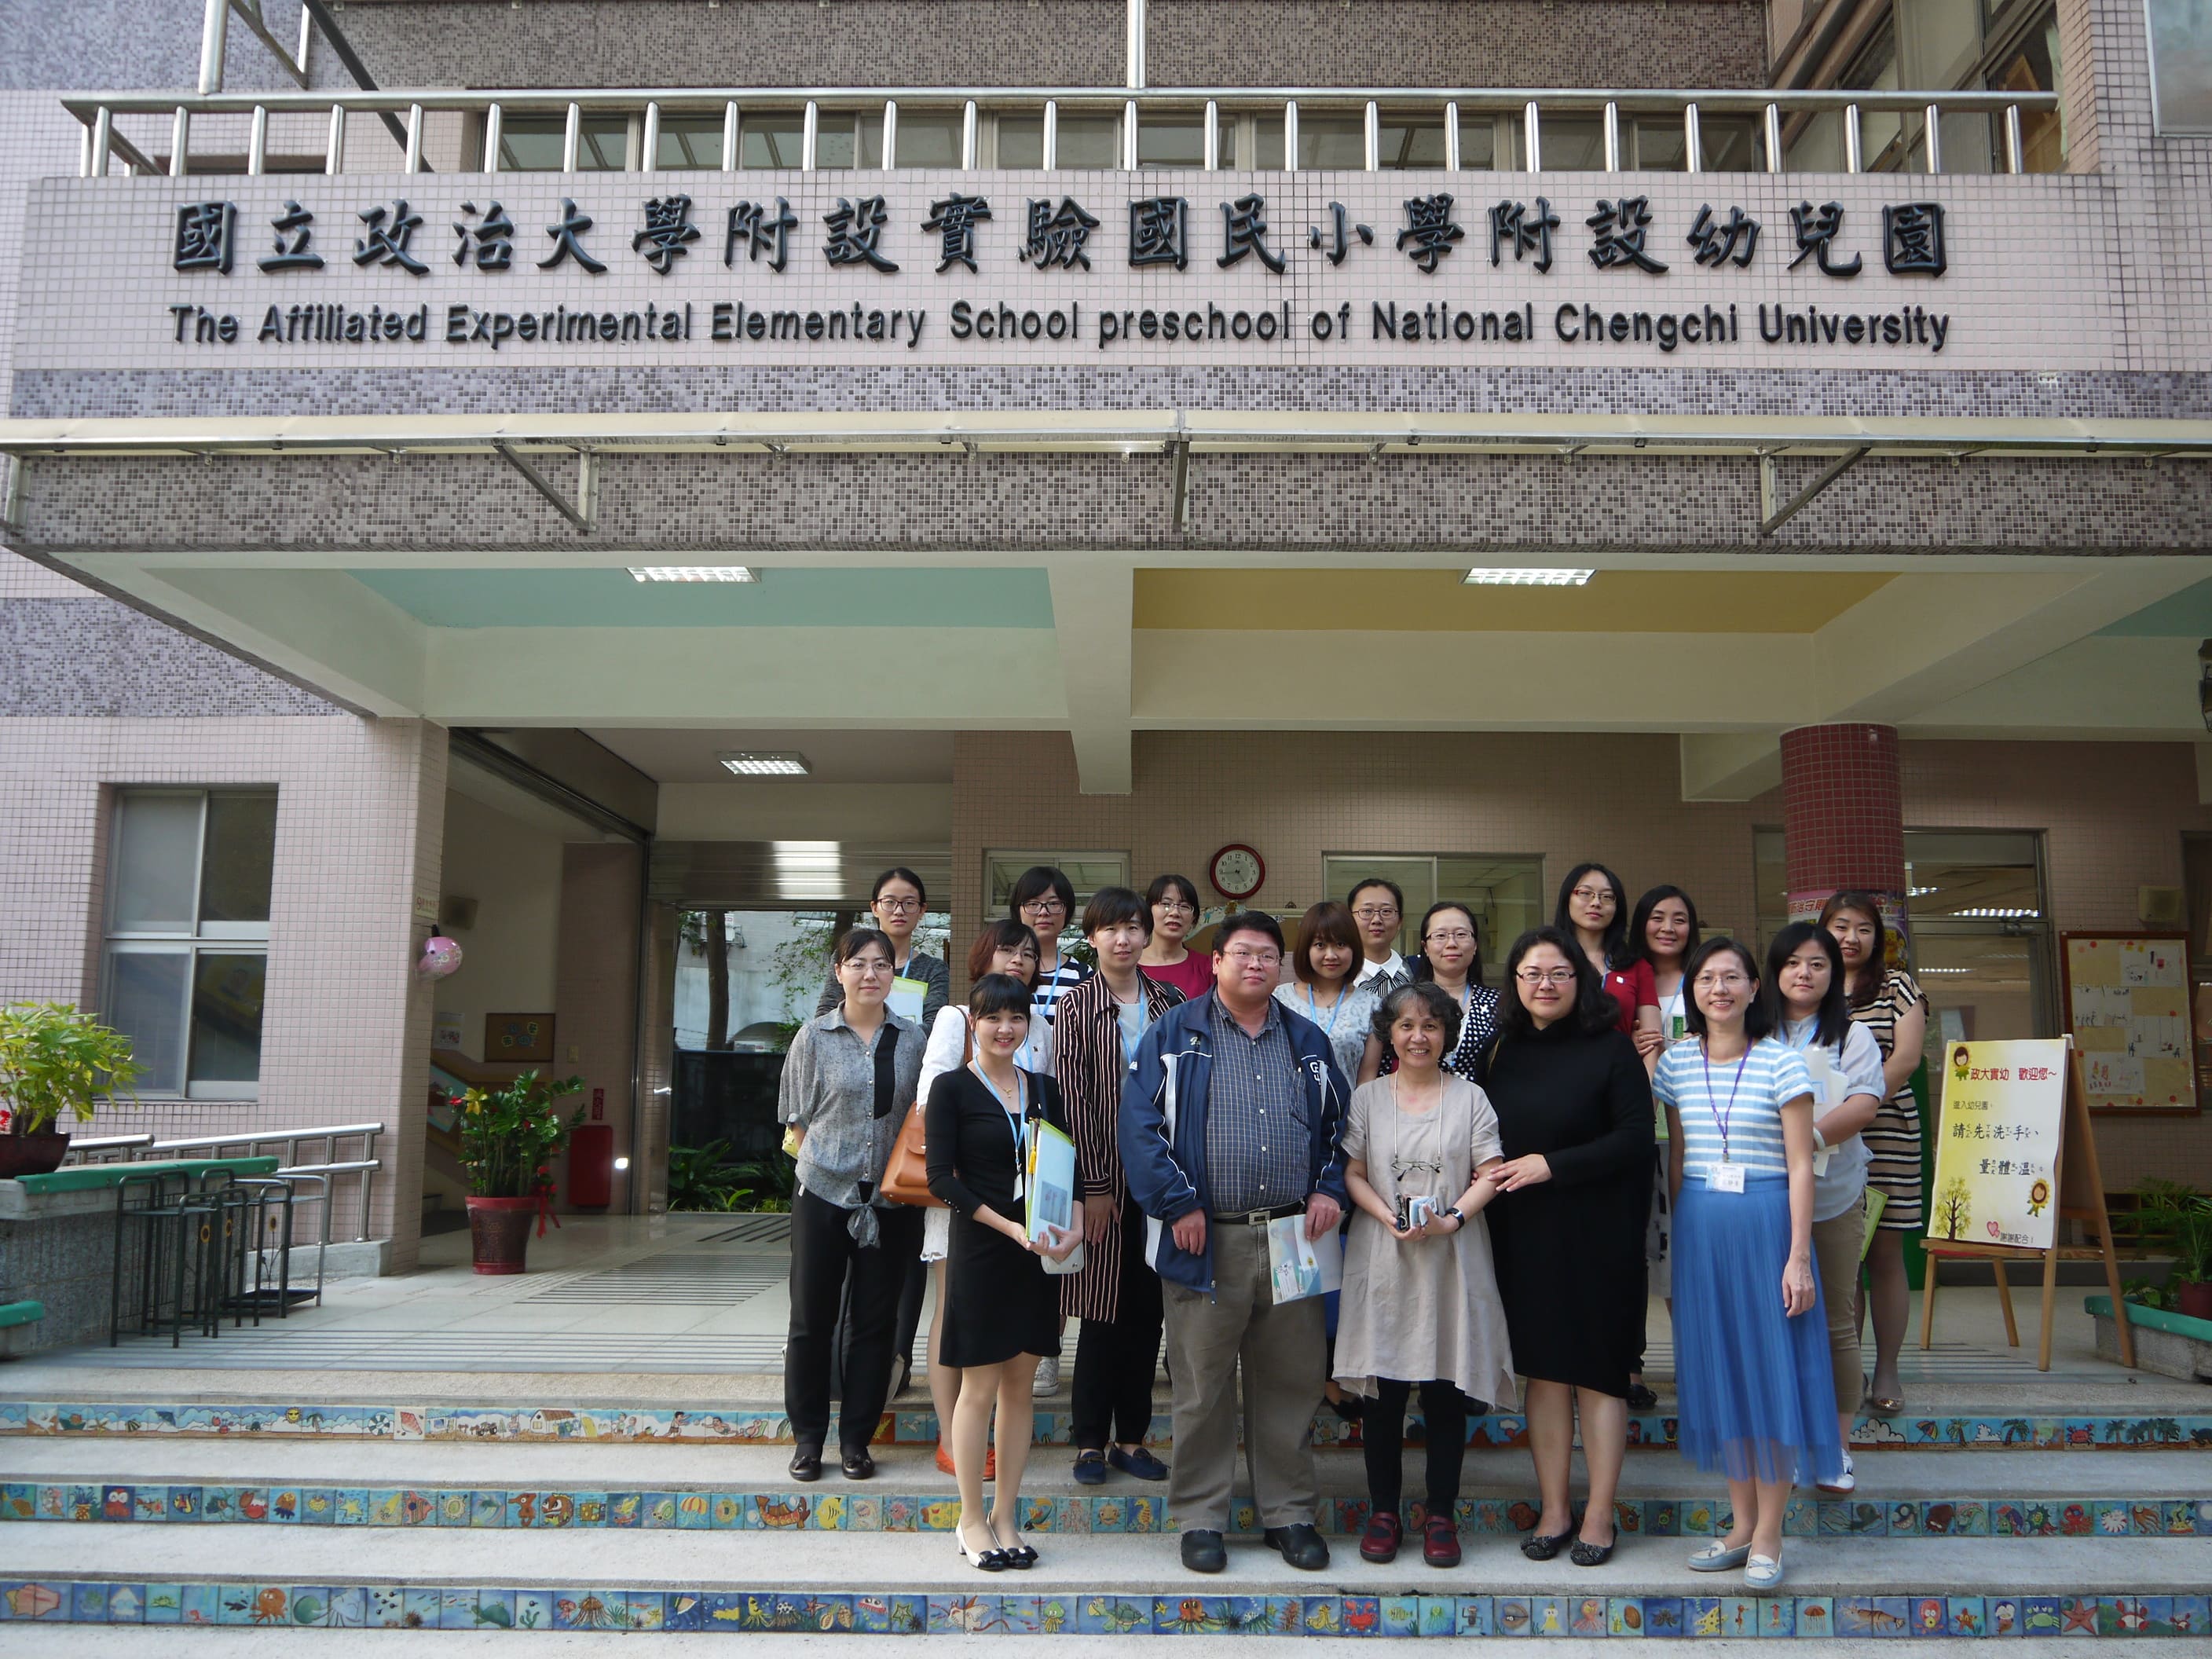 20151026 中國西安歐亞學院蒞臨參訪